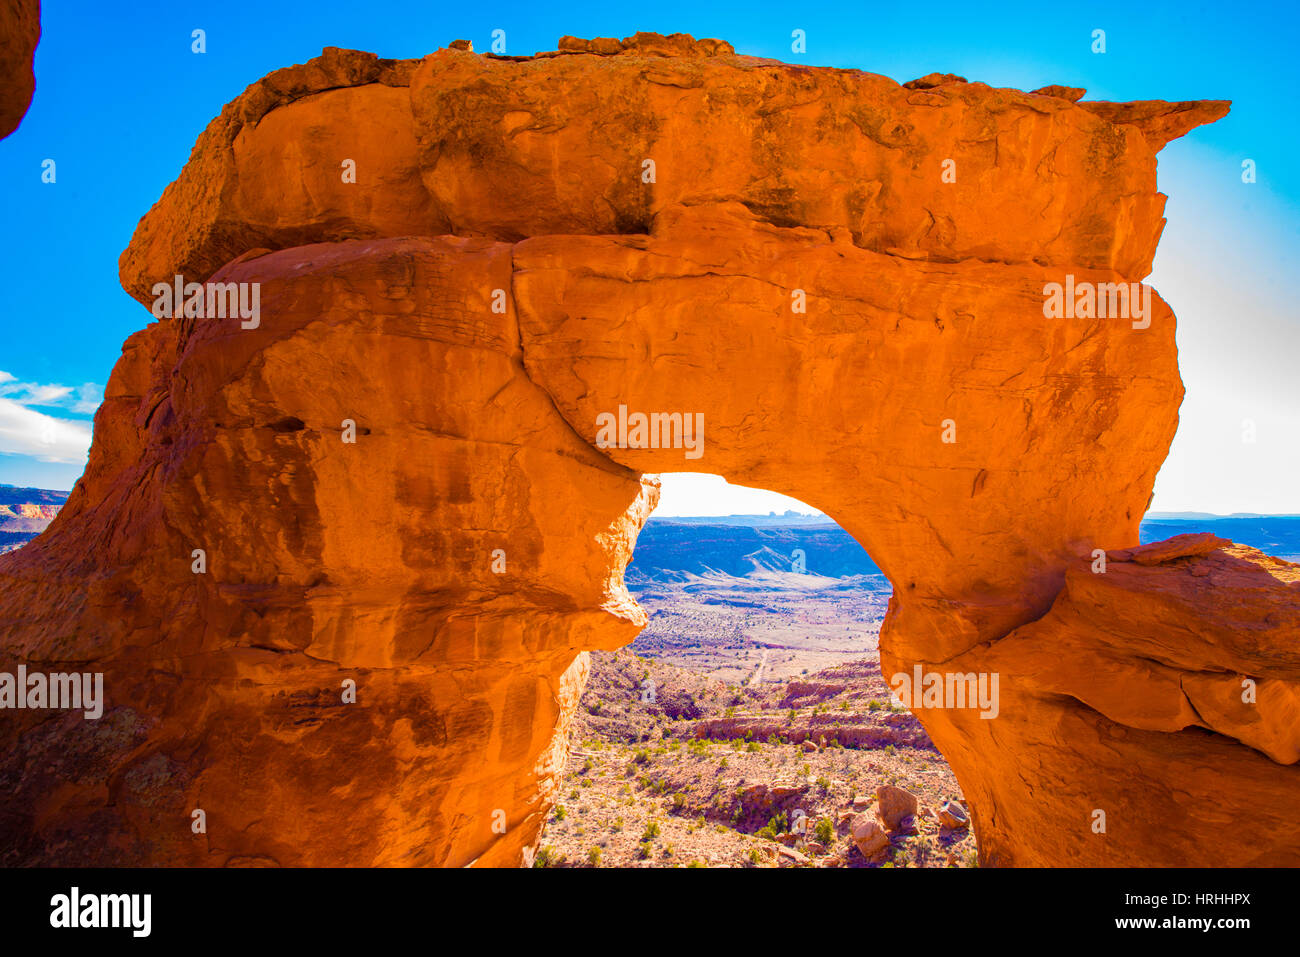 Cache Valley Arch, landet in der Nähe von Moab BLM. Arches-Nationalpark in Utah Stockfoto